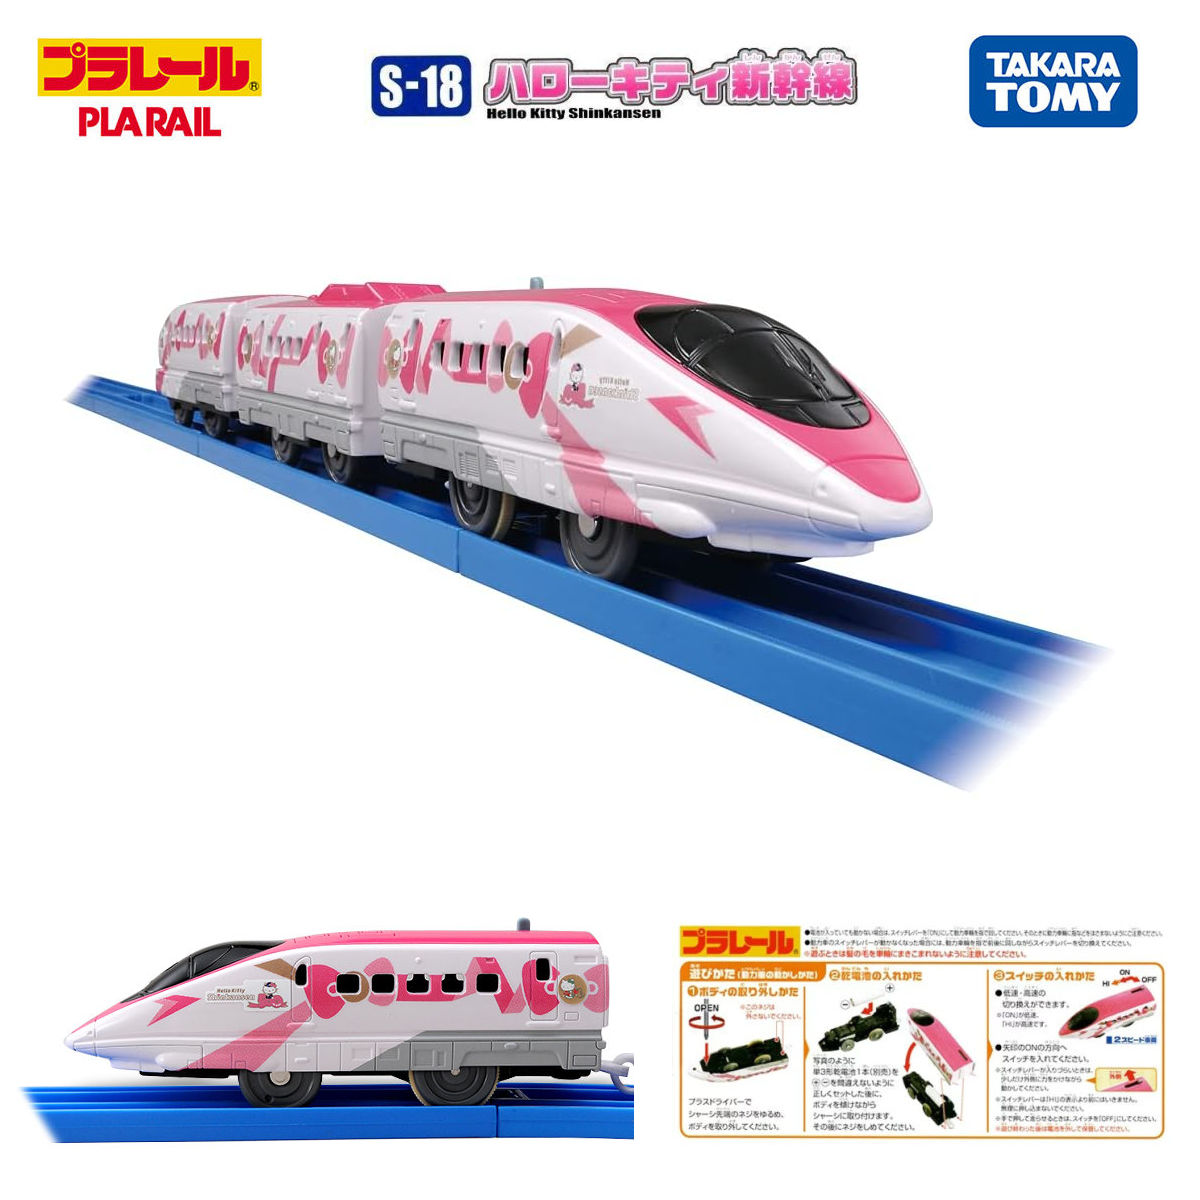 Mô hình tàu điện Takara Tomy S-18 Hello Kitty Shinkansen